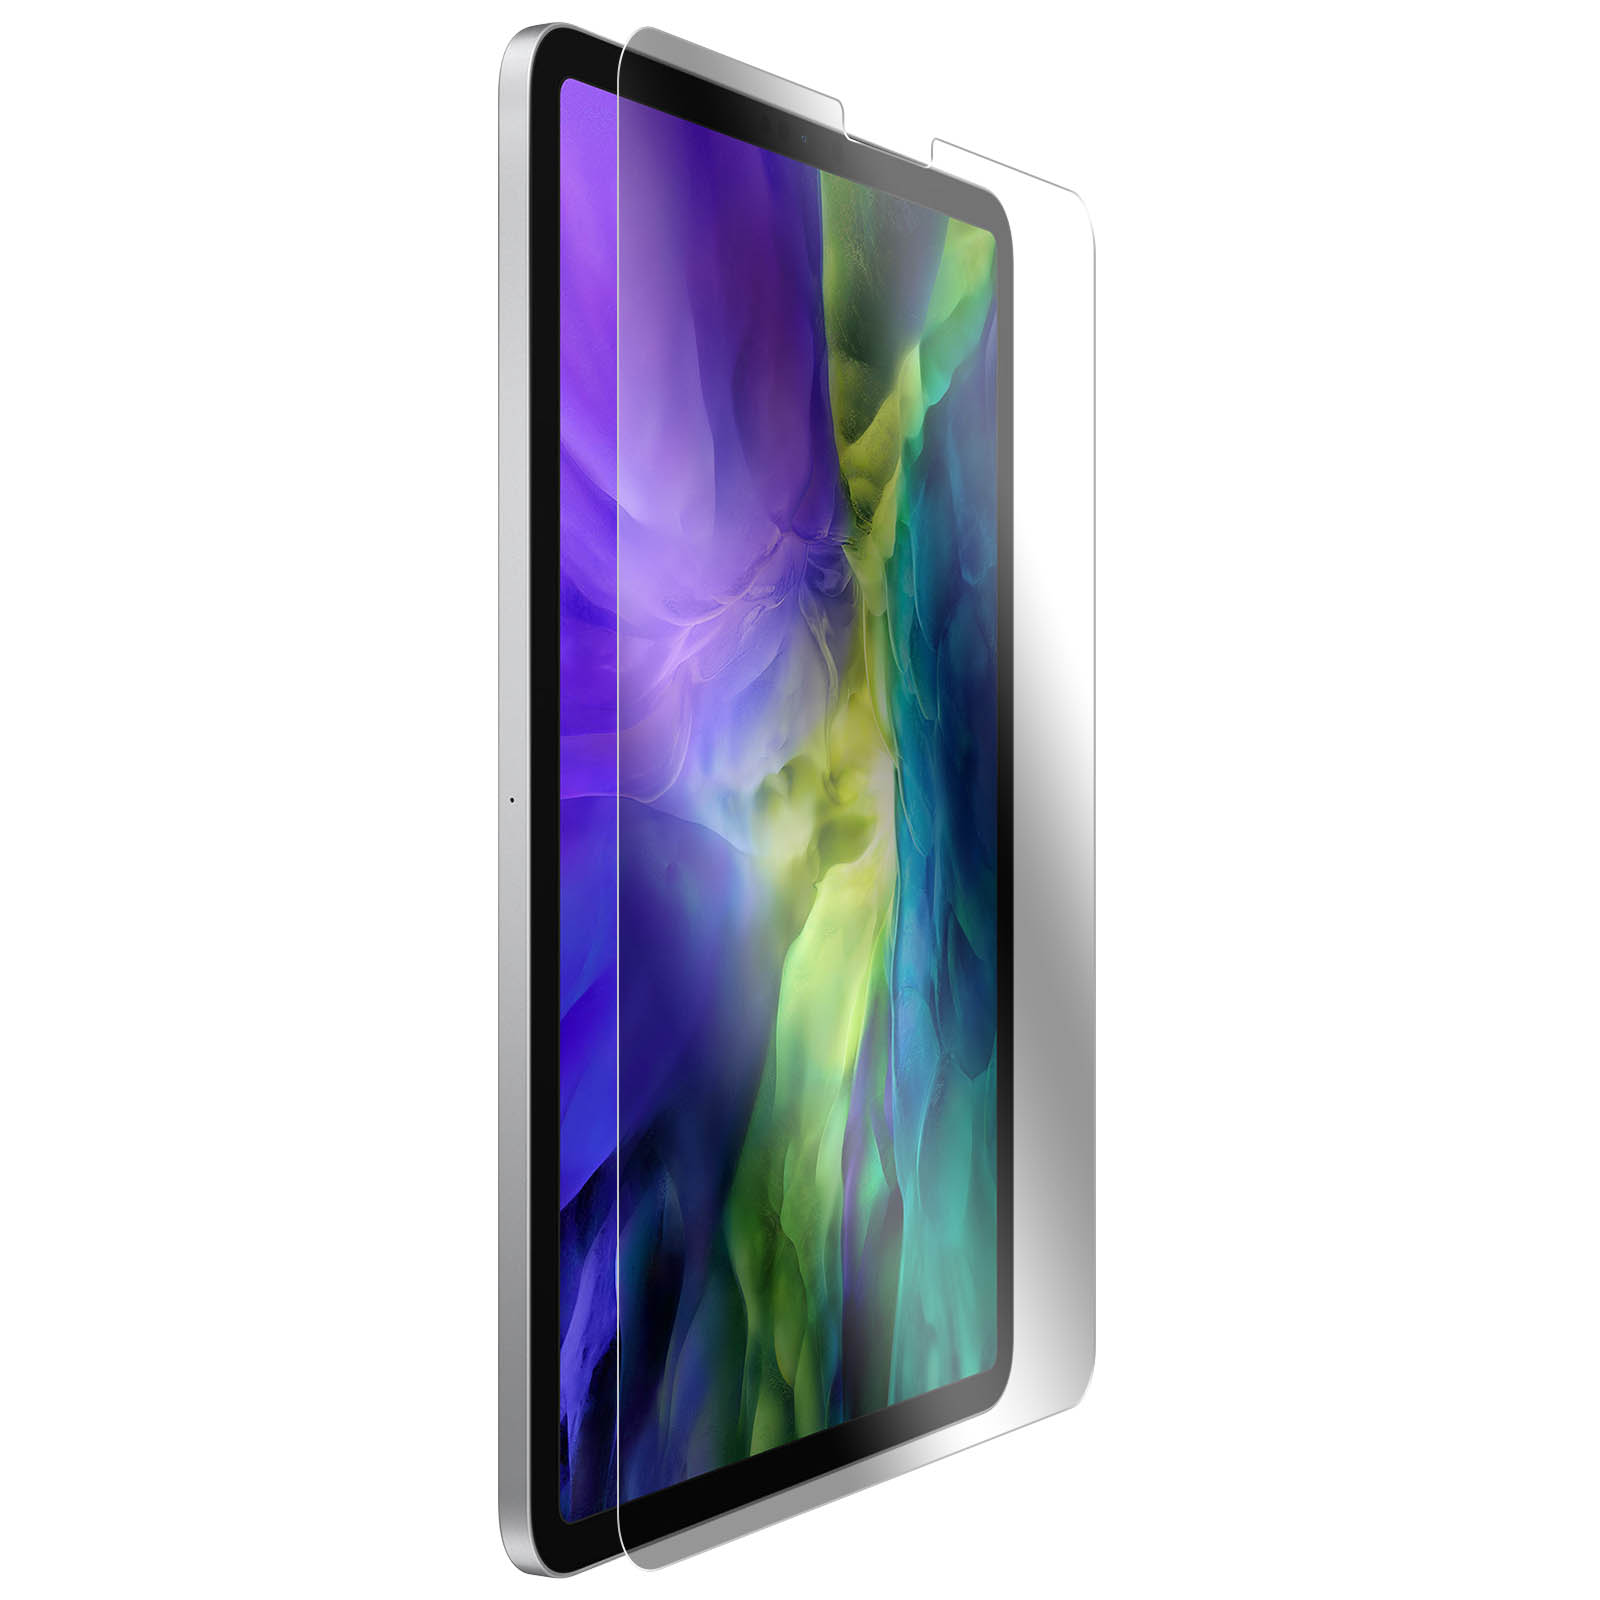 Film de protection d'écran anti-rayures, en verre trempé, pour tablette  Apple iPad Pro 12.9 2018 2020 2021 2022, 2 paquets - AliExpress